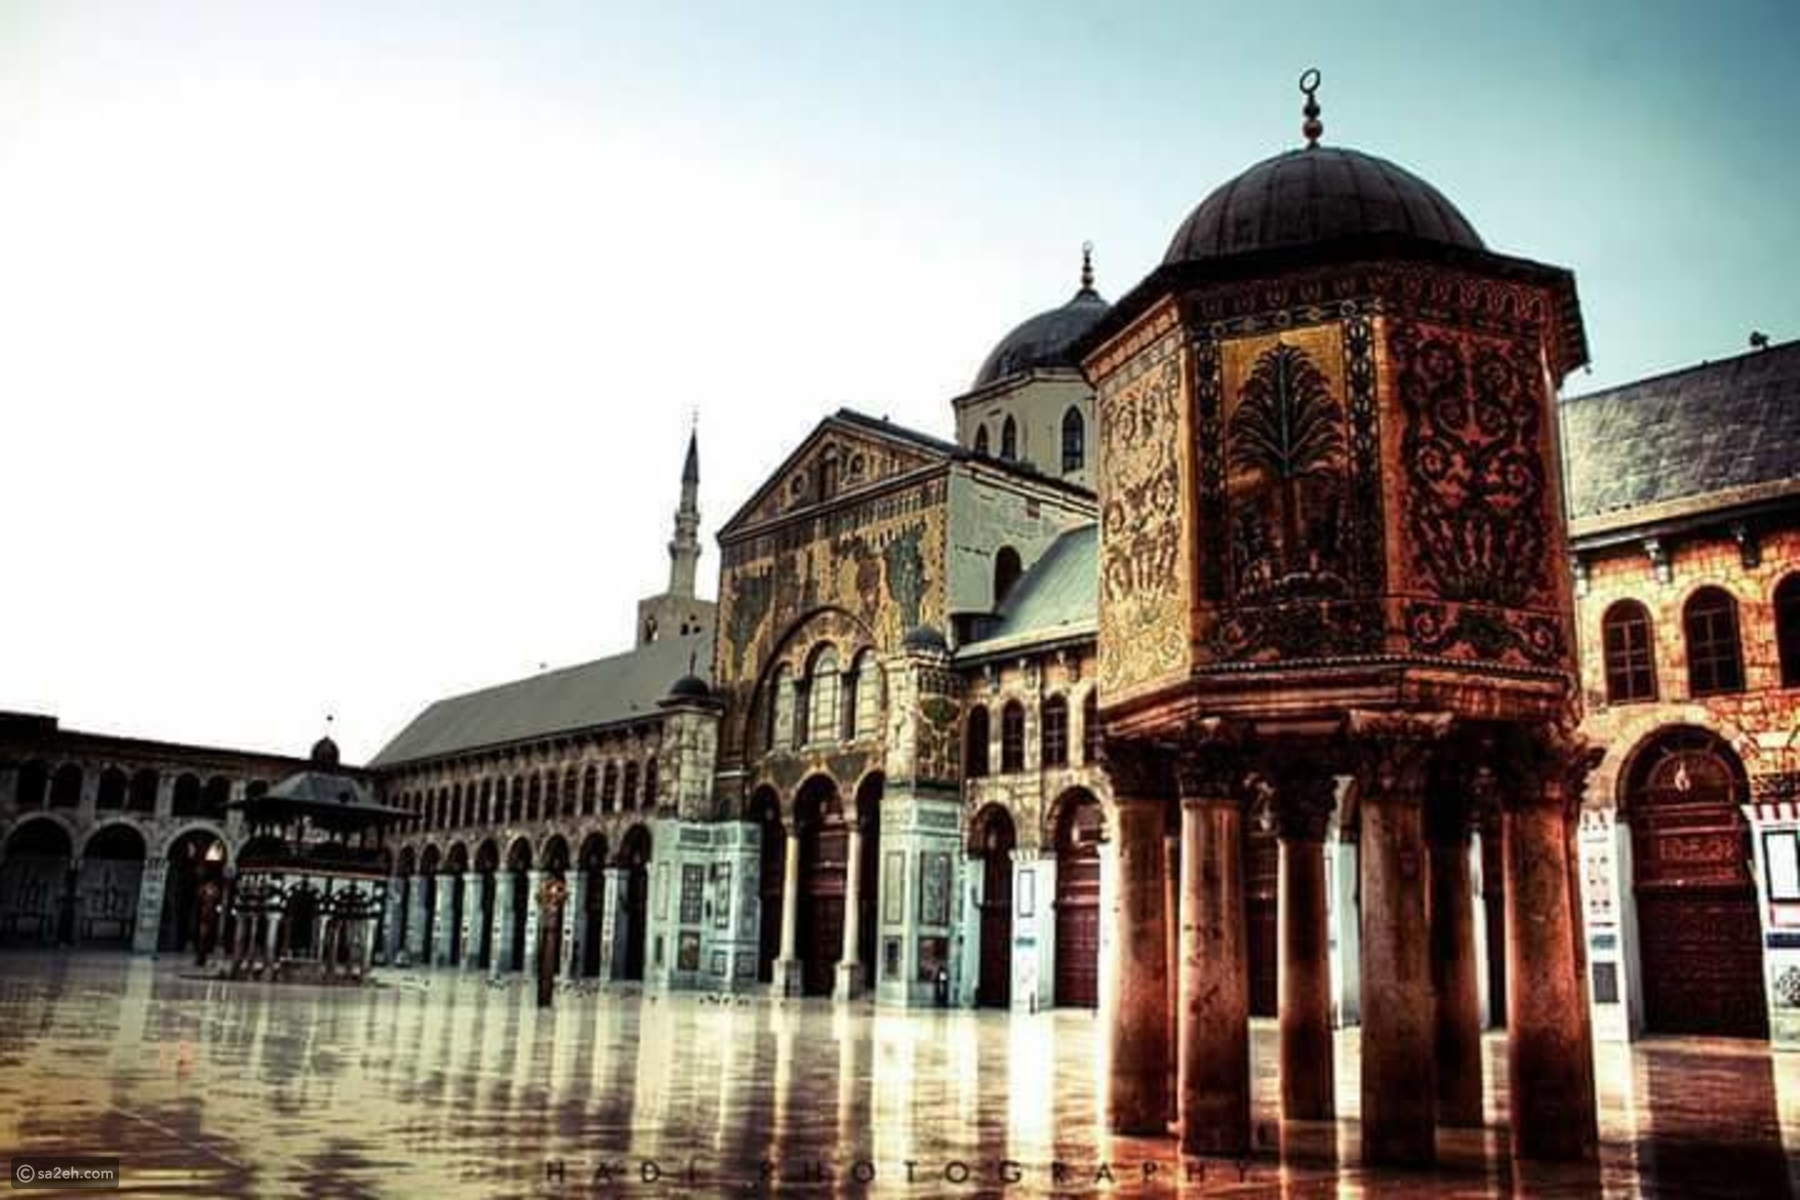 صور تأخذك في رحلة سريعة داخل أقدم عاصمة عربية "دمشق" في سوريا